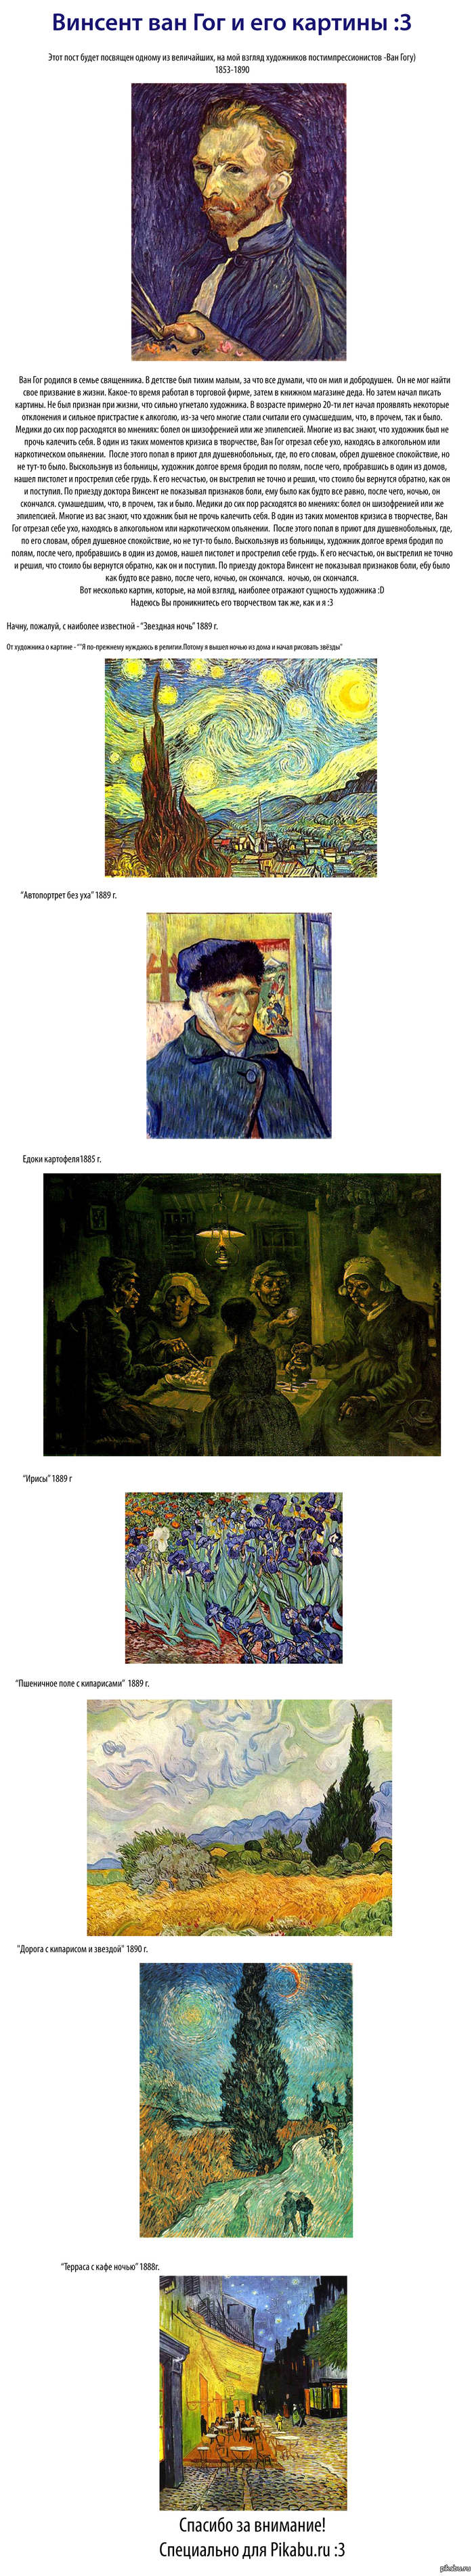 van Gogh - van Gogh, Art, Painting